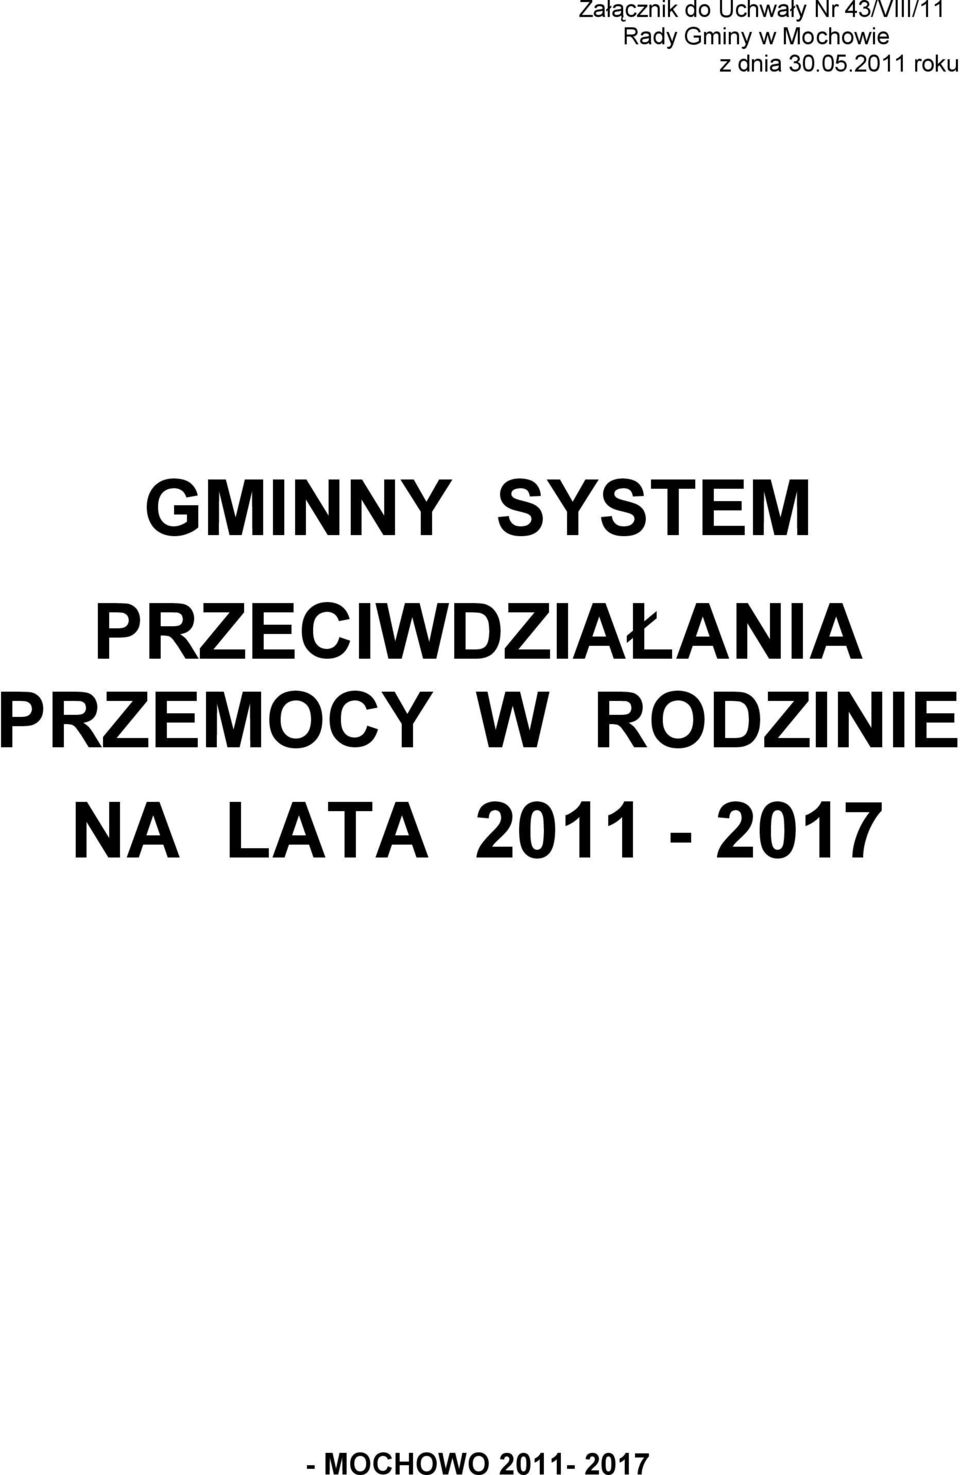 2011 roku GMINNY SYSTEM PRZECIWDZIAŁANIA